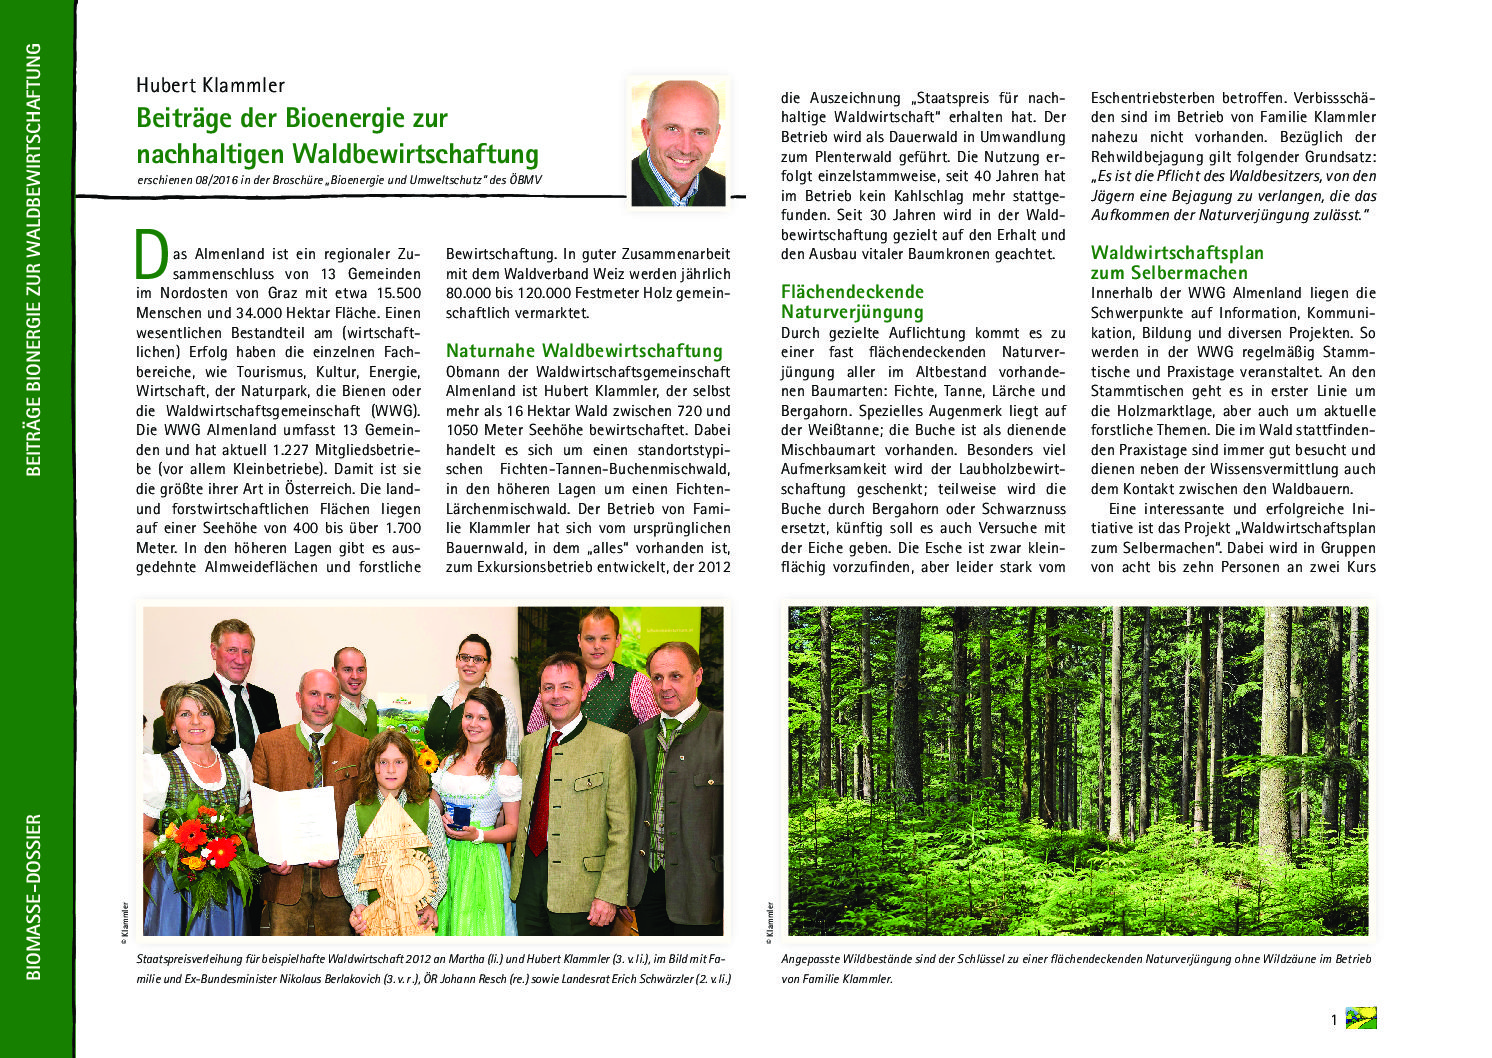 Beiträge der Bioenergie zur nachhaltigen Waldbewirtschaftung